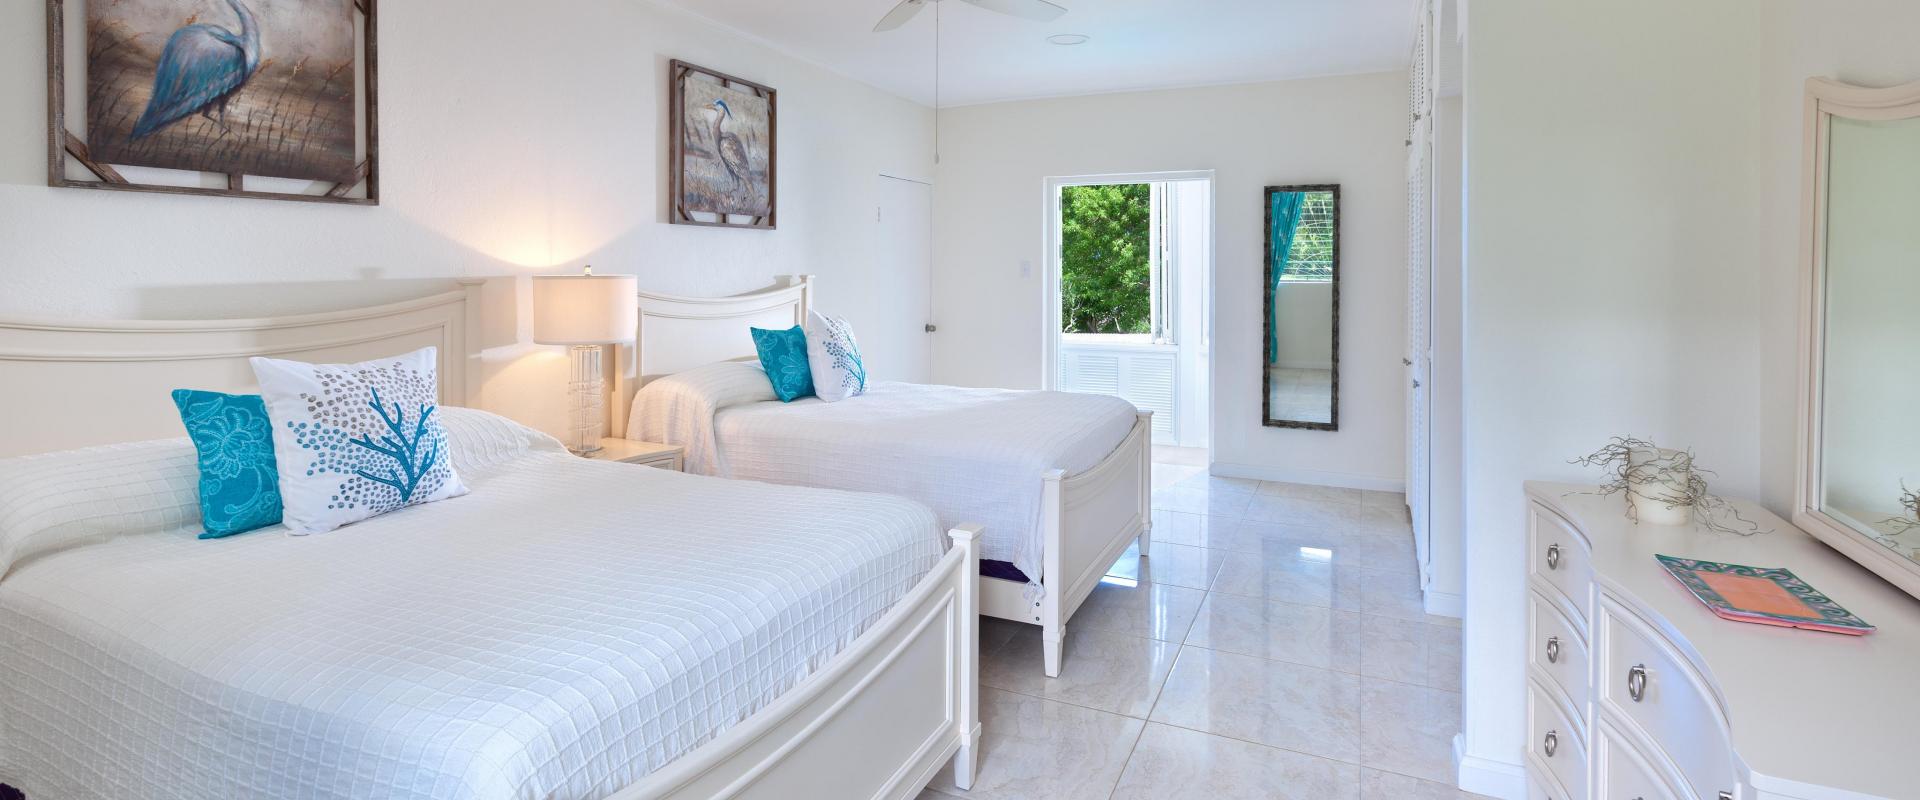 Barbados Holiday Rental Halle Rose Sandy Lane Bedroom 4